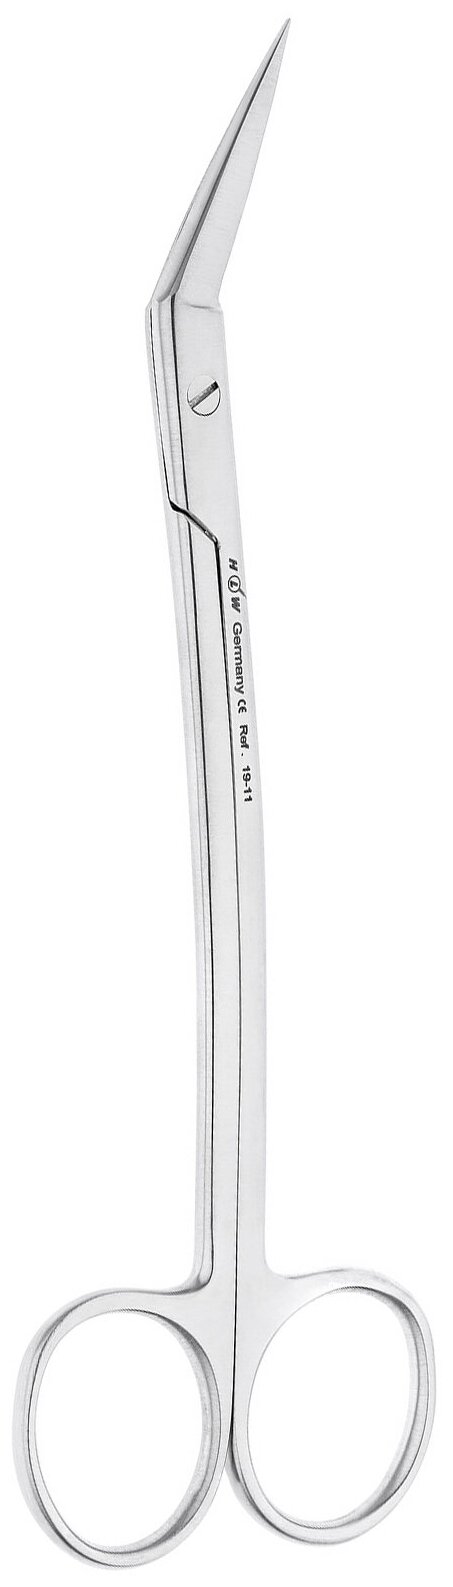 Ножницы хирургические Goldmann-Fox угловые, зубчатые, 16 см